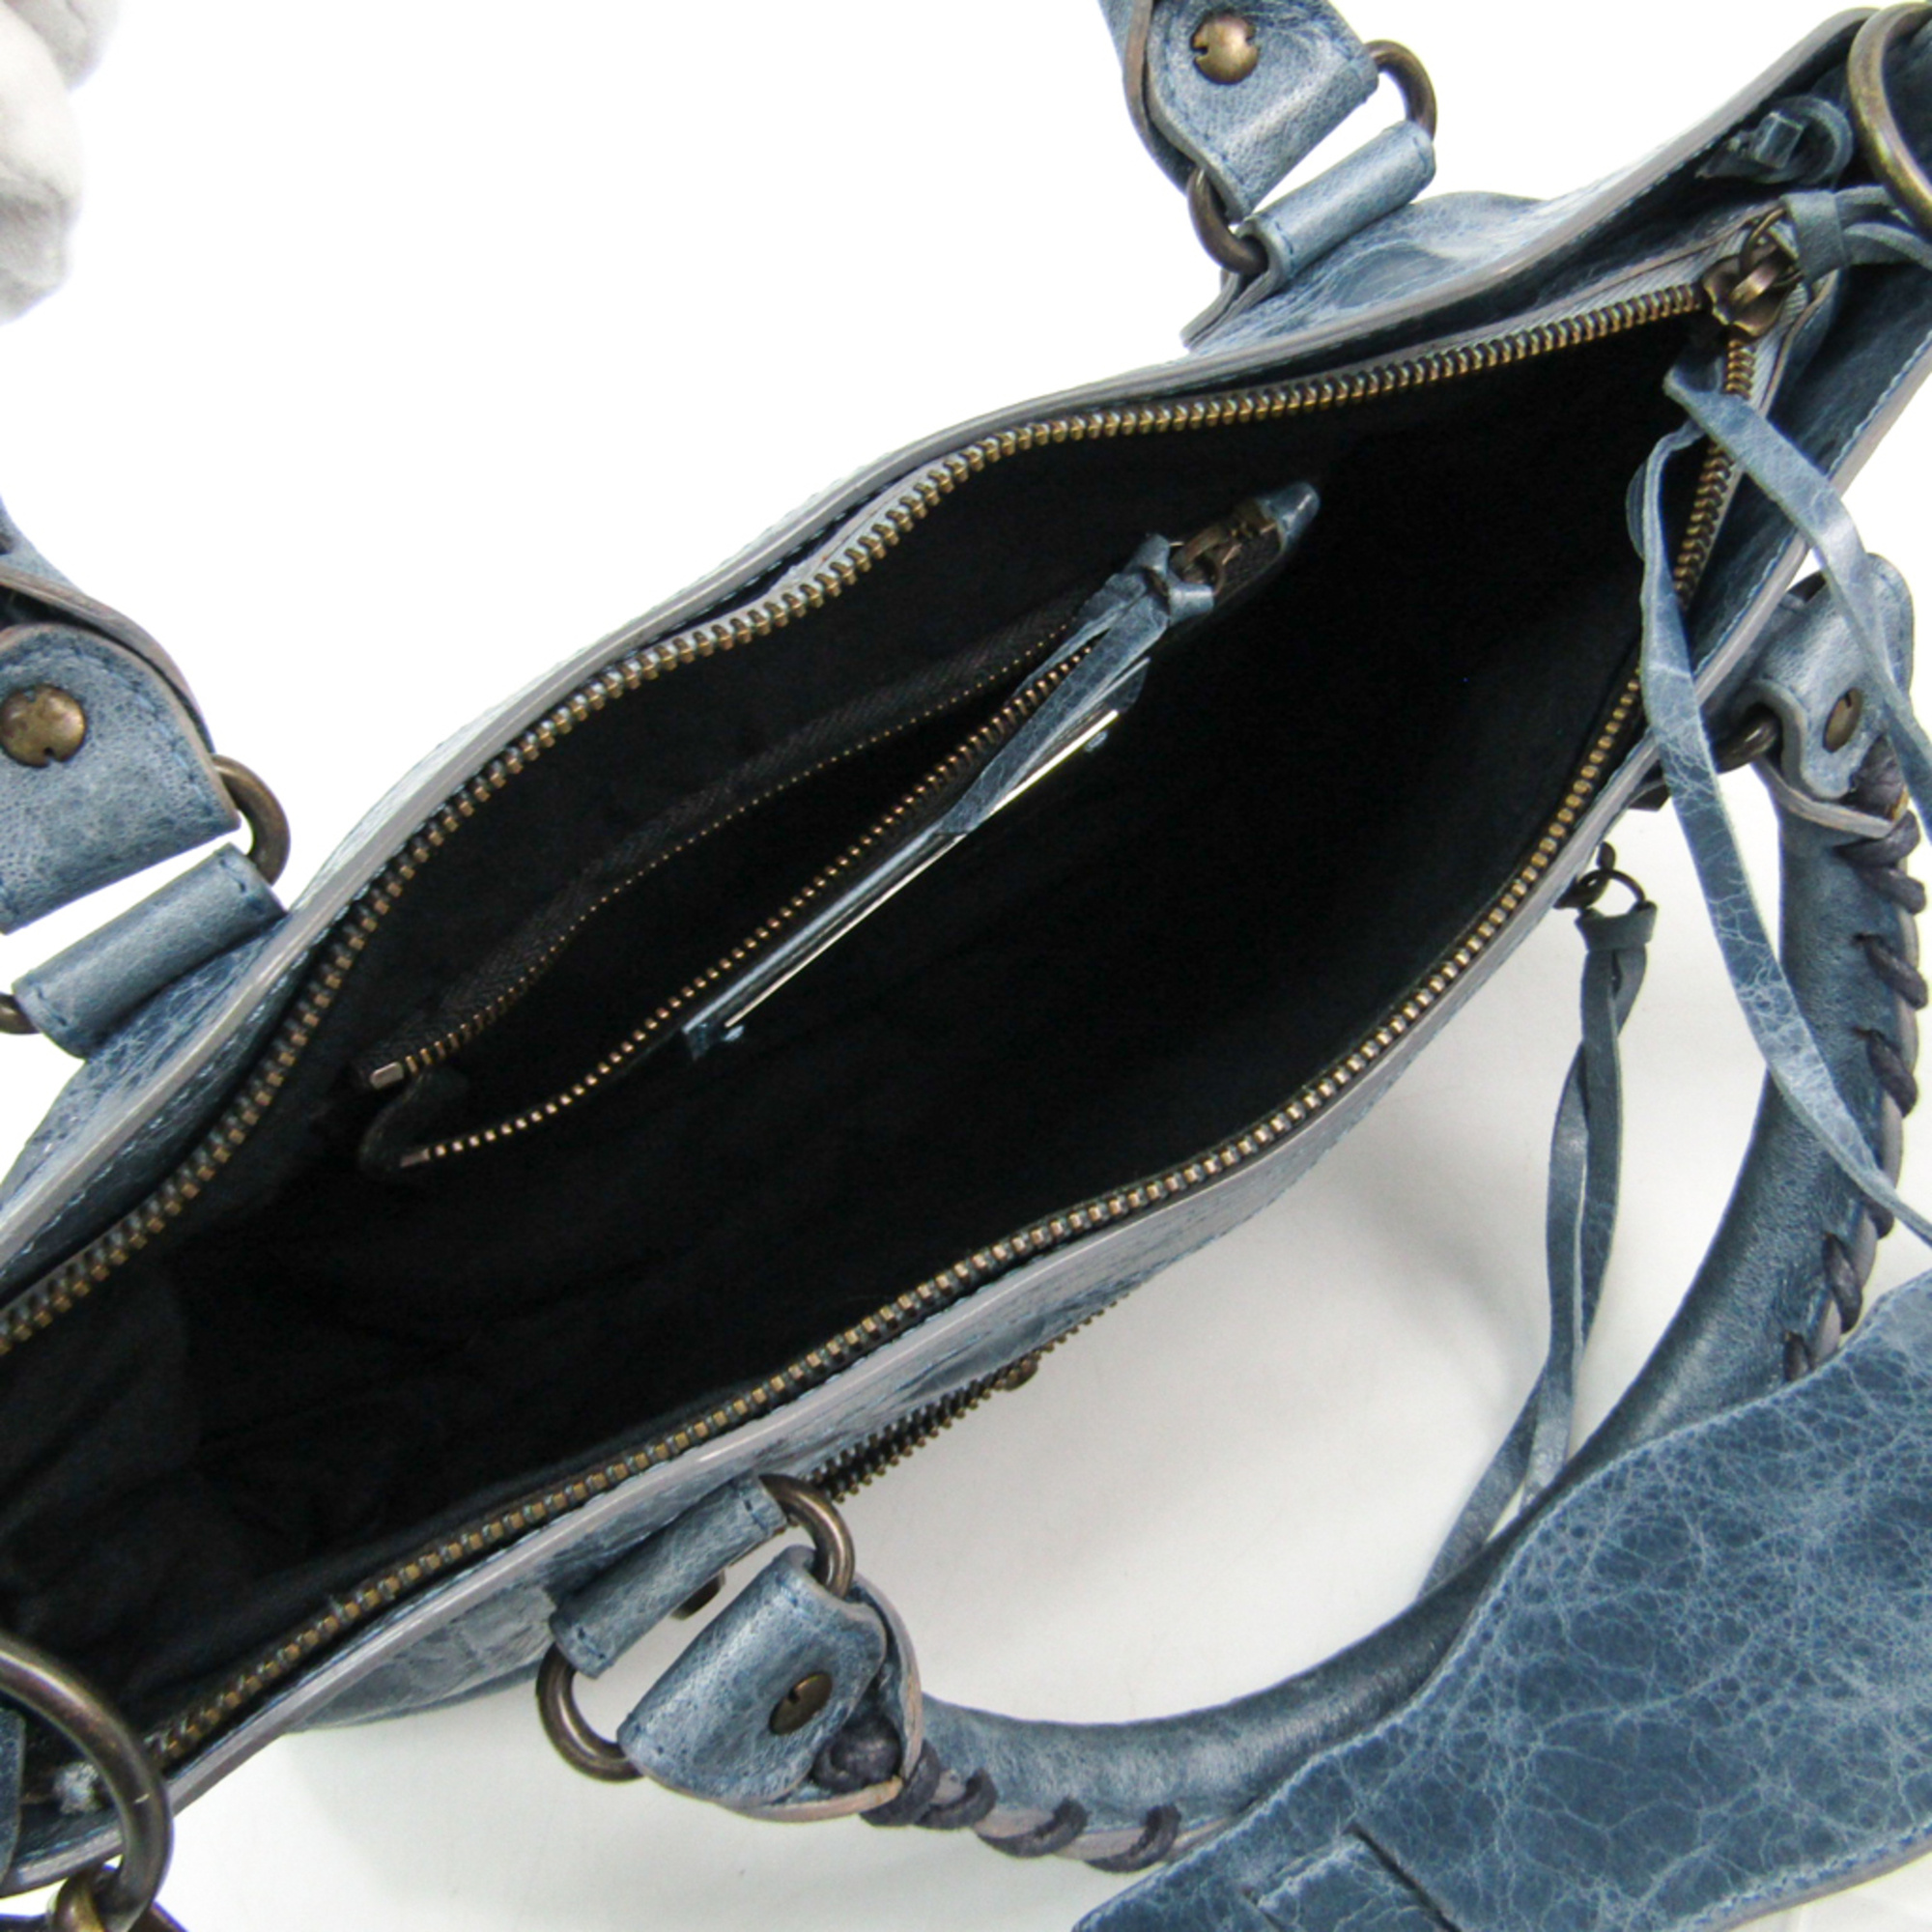 Balenciaga Fast 103208 Leather Handbag Dark Blue